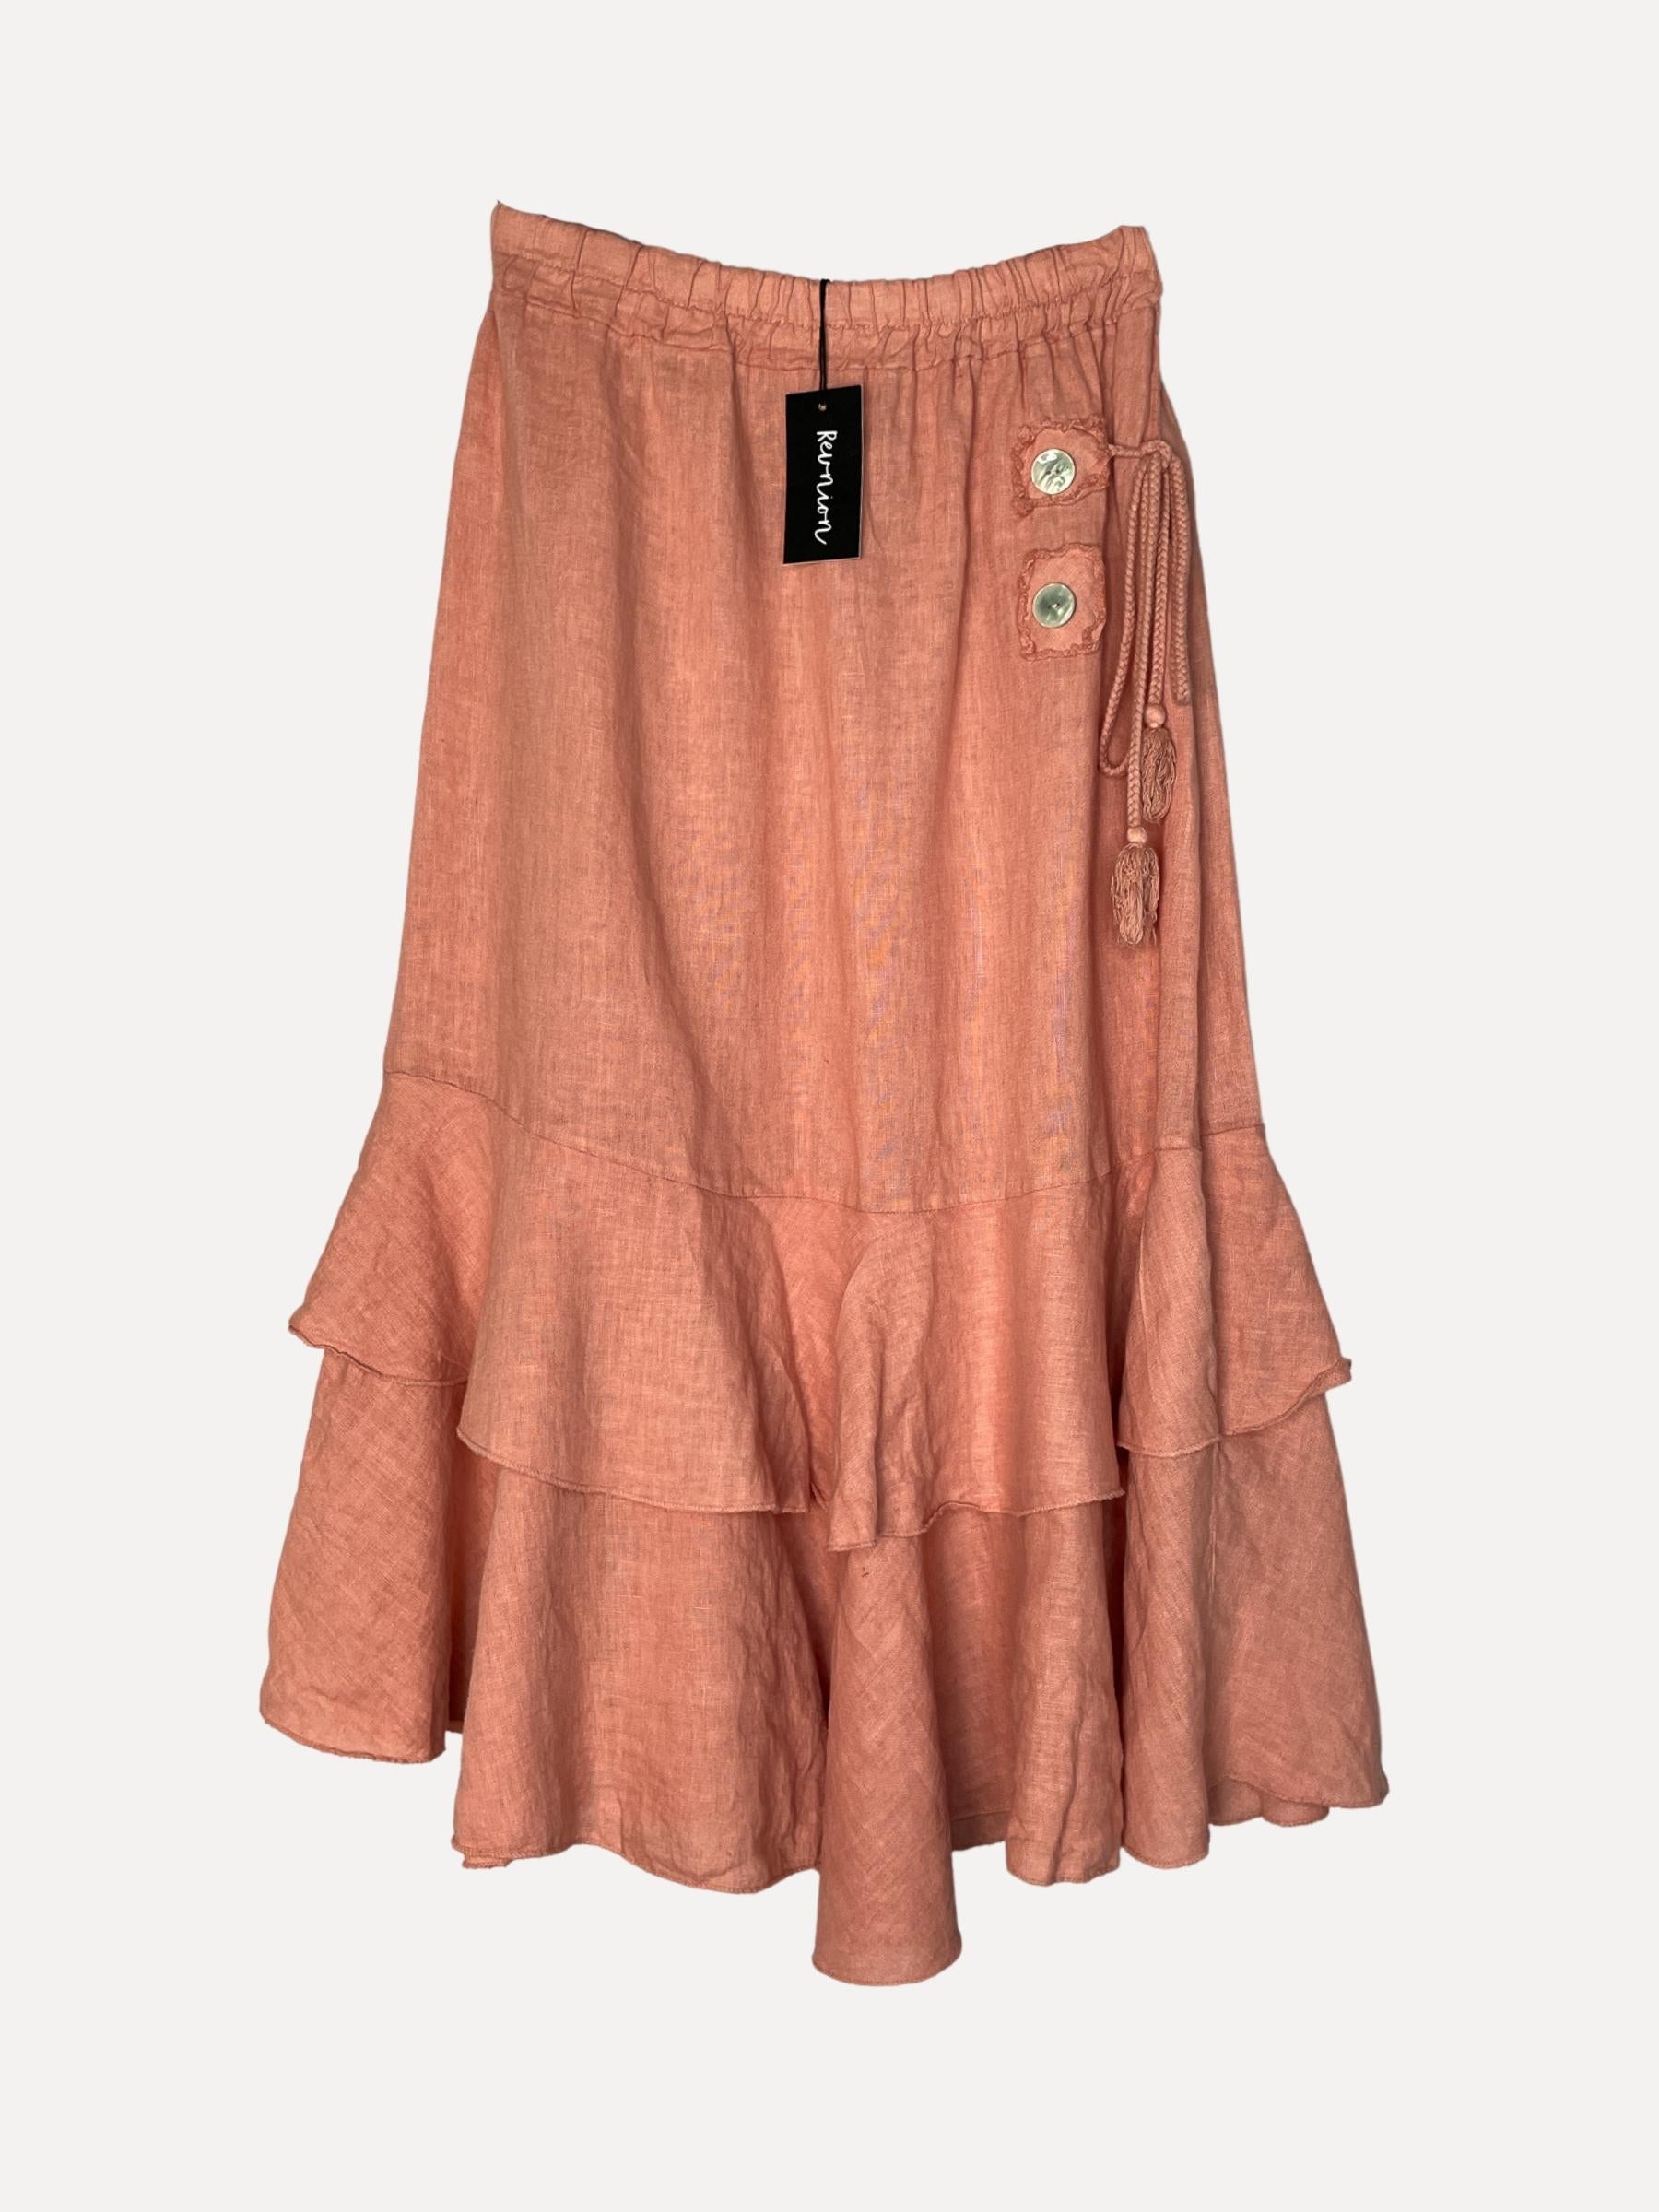 DAFFODIL Skirt, Caramelle Rose